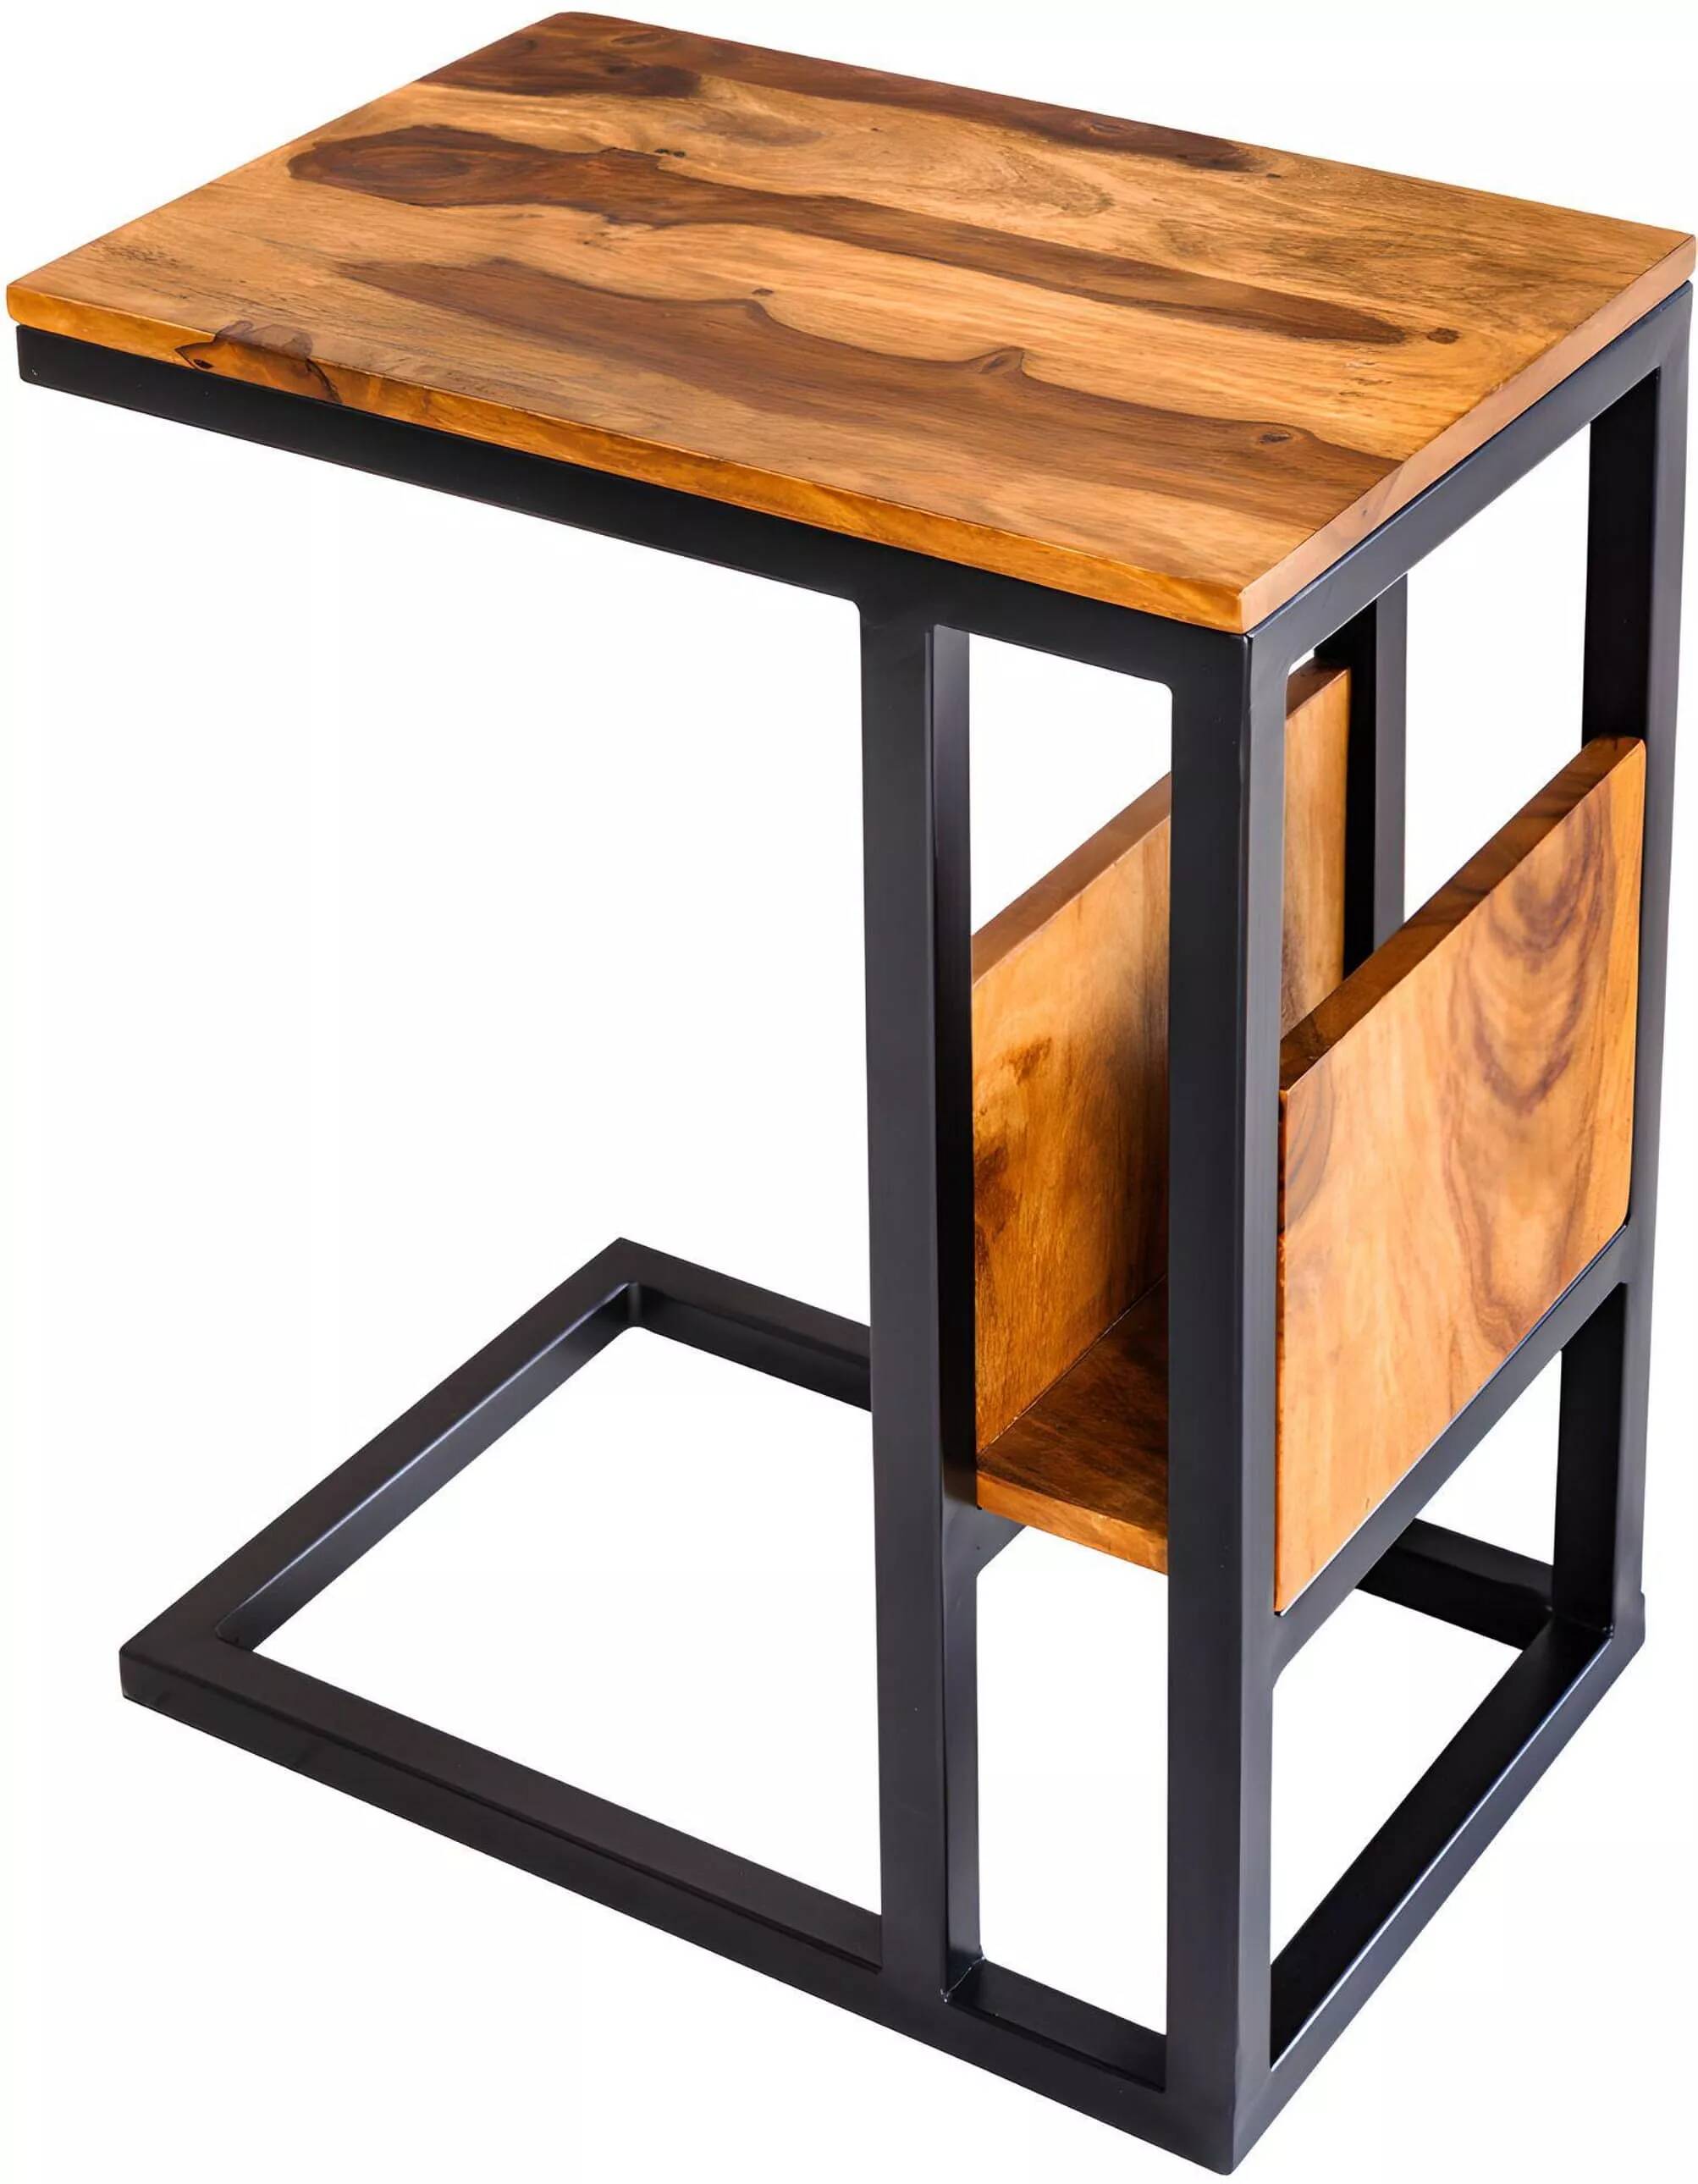 Table d'appoint en bois massif sheesham et métal noir